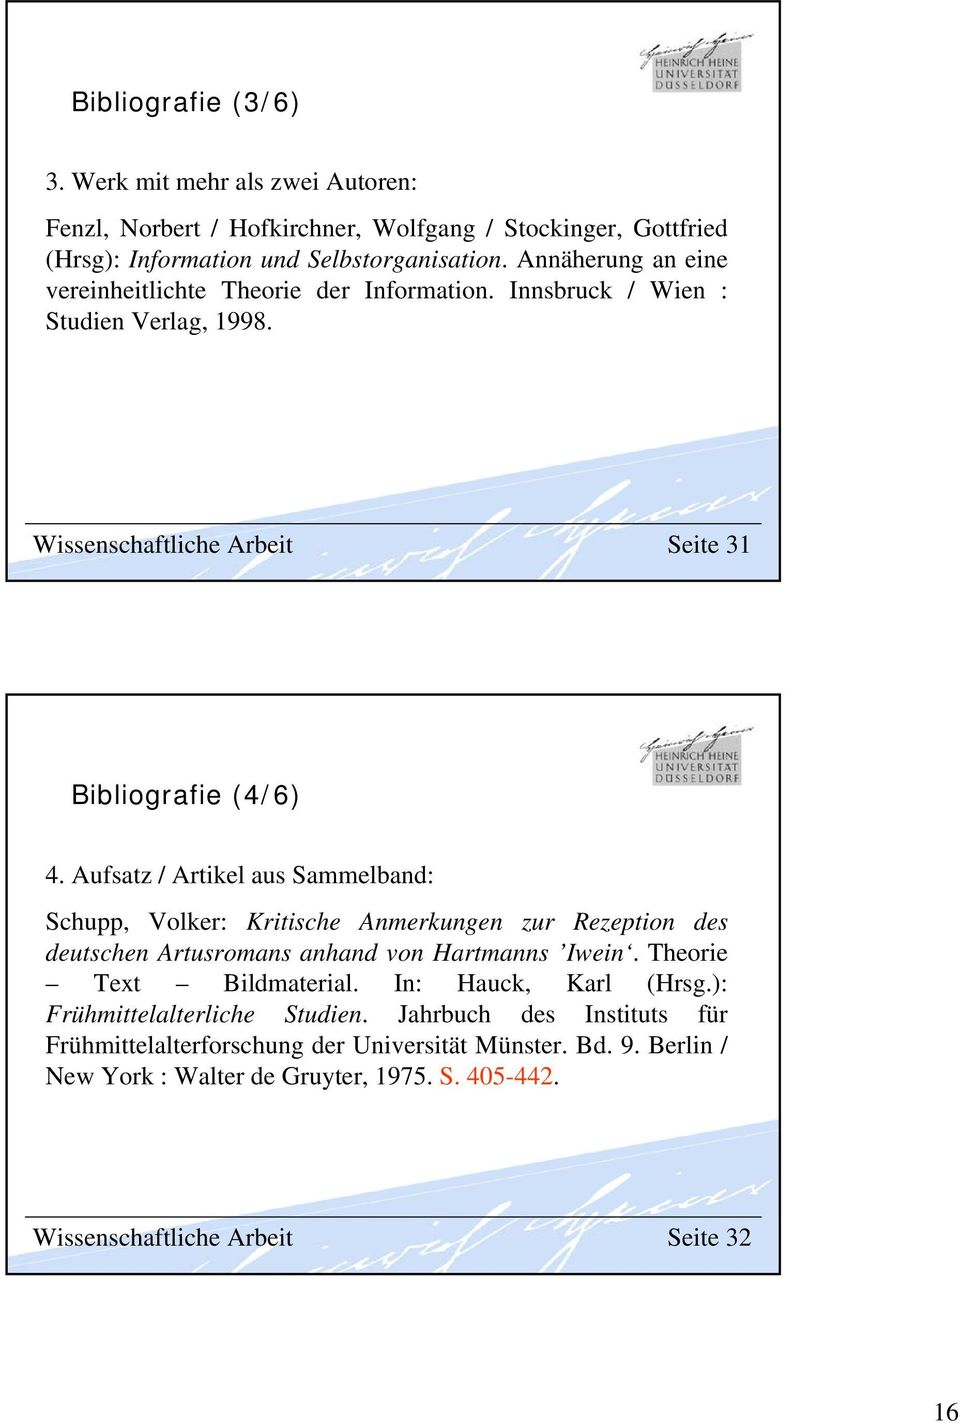 Aufsatz / Artikel aus Sammelband: Schupp, Volker: Kritische Anmerkungen zur Rezeption des deutschen Artusromans anhand von Hartmanns Iwein. Theorie Text Bildmaterial.